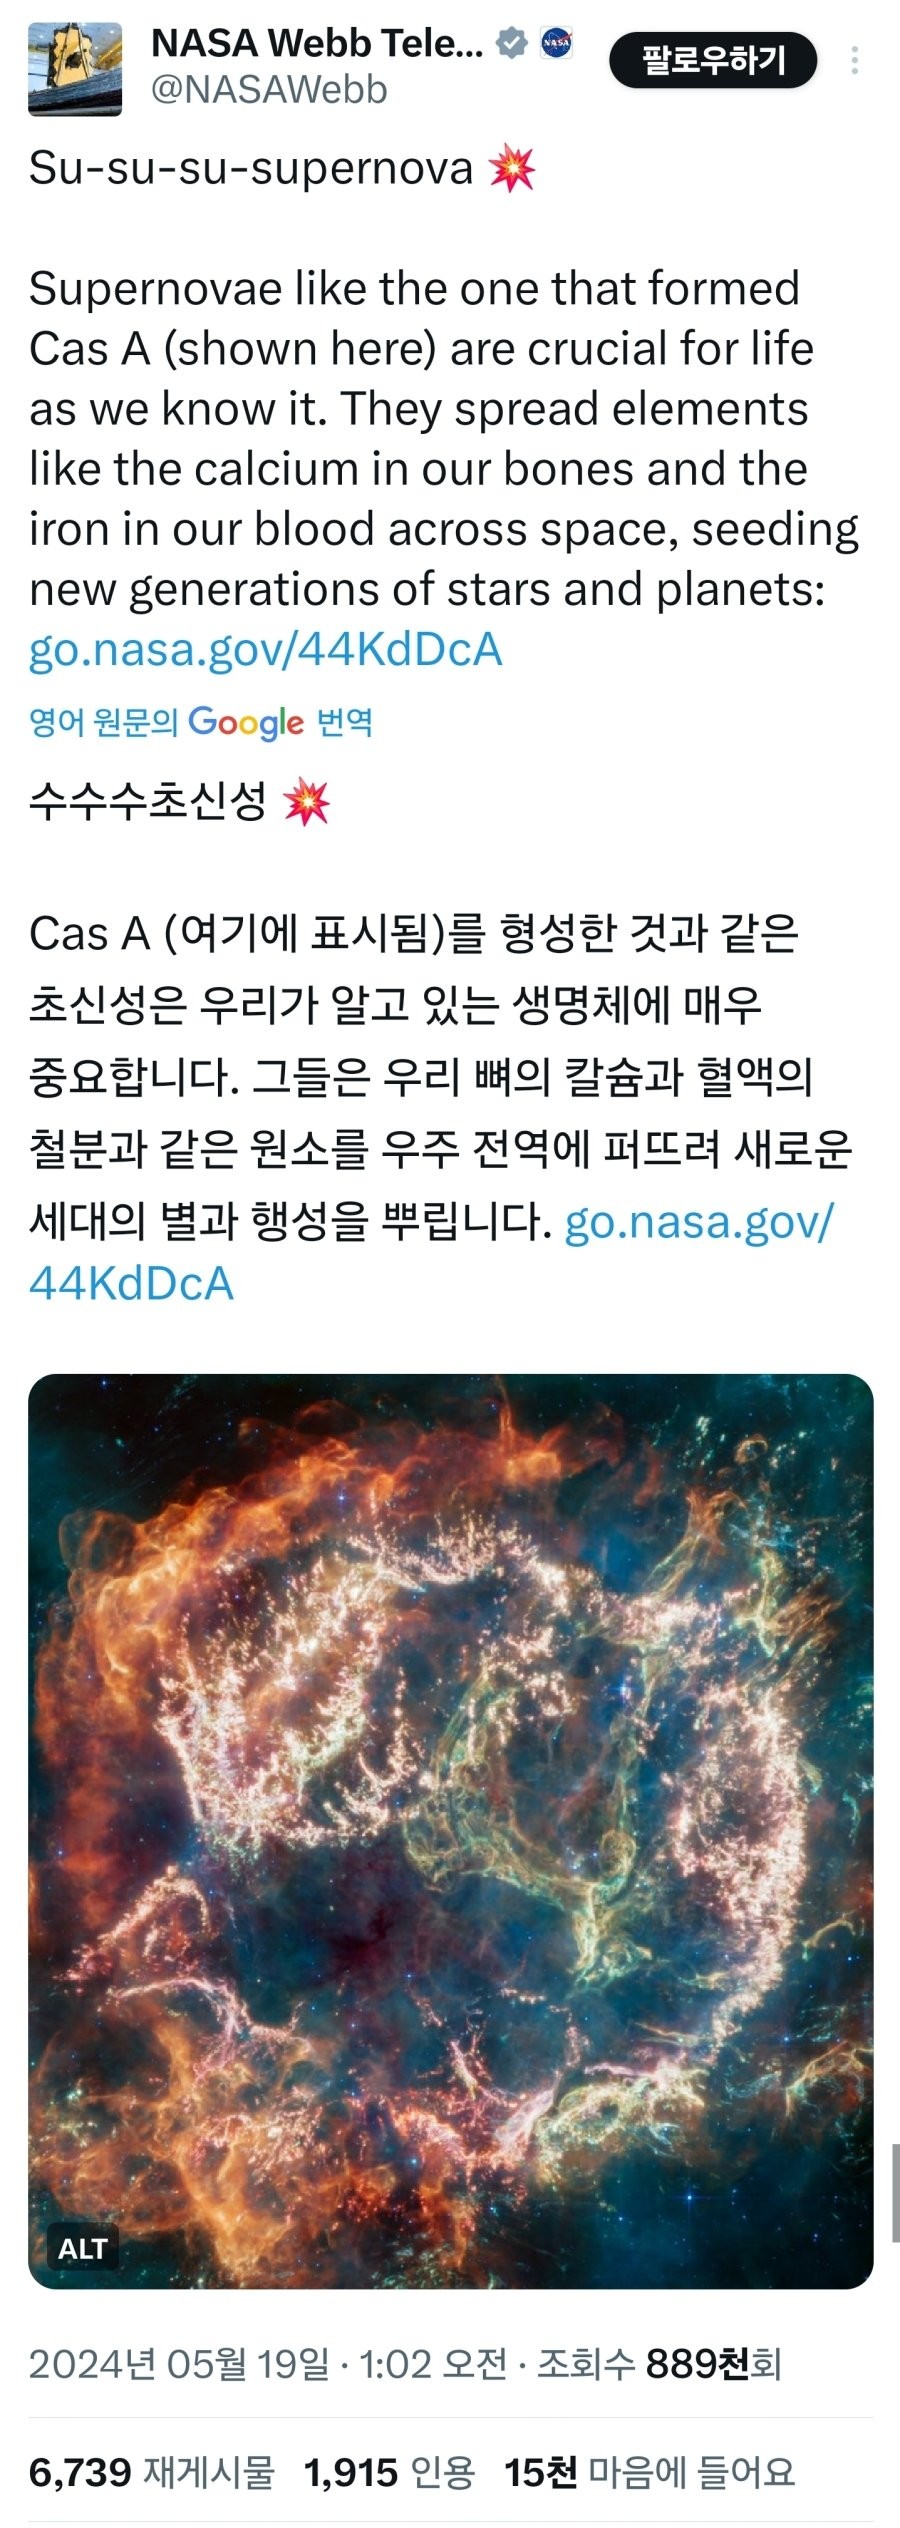 NASA 공식 트위터 에스파 슈퍼노바 언급.jpg